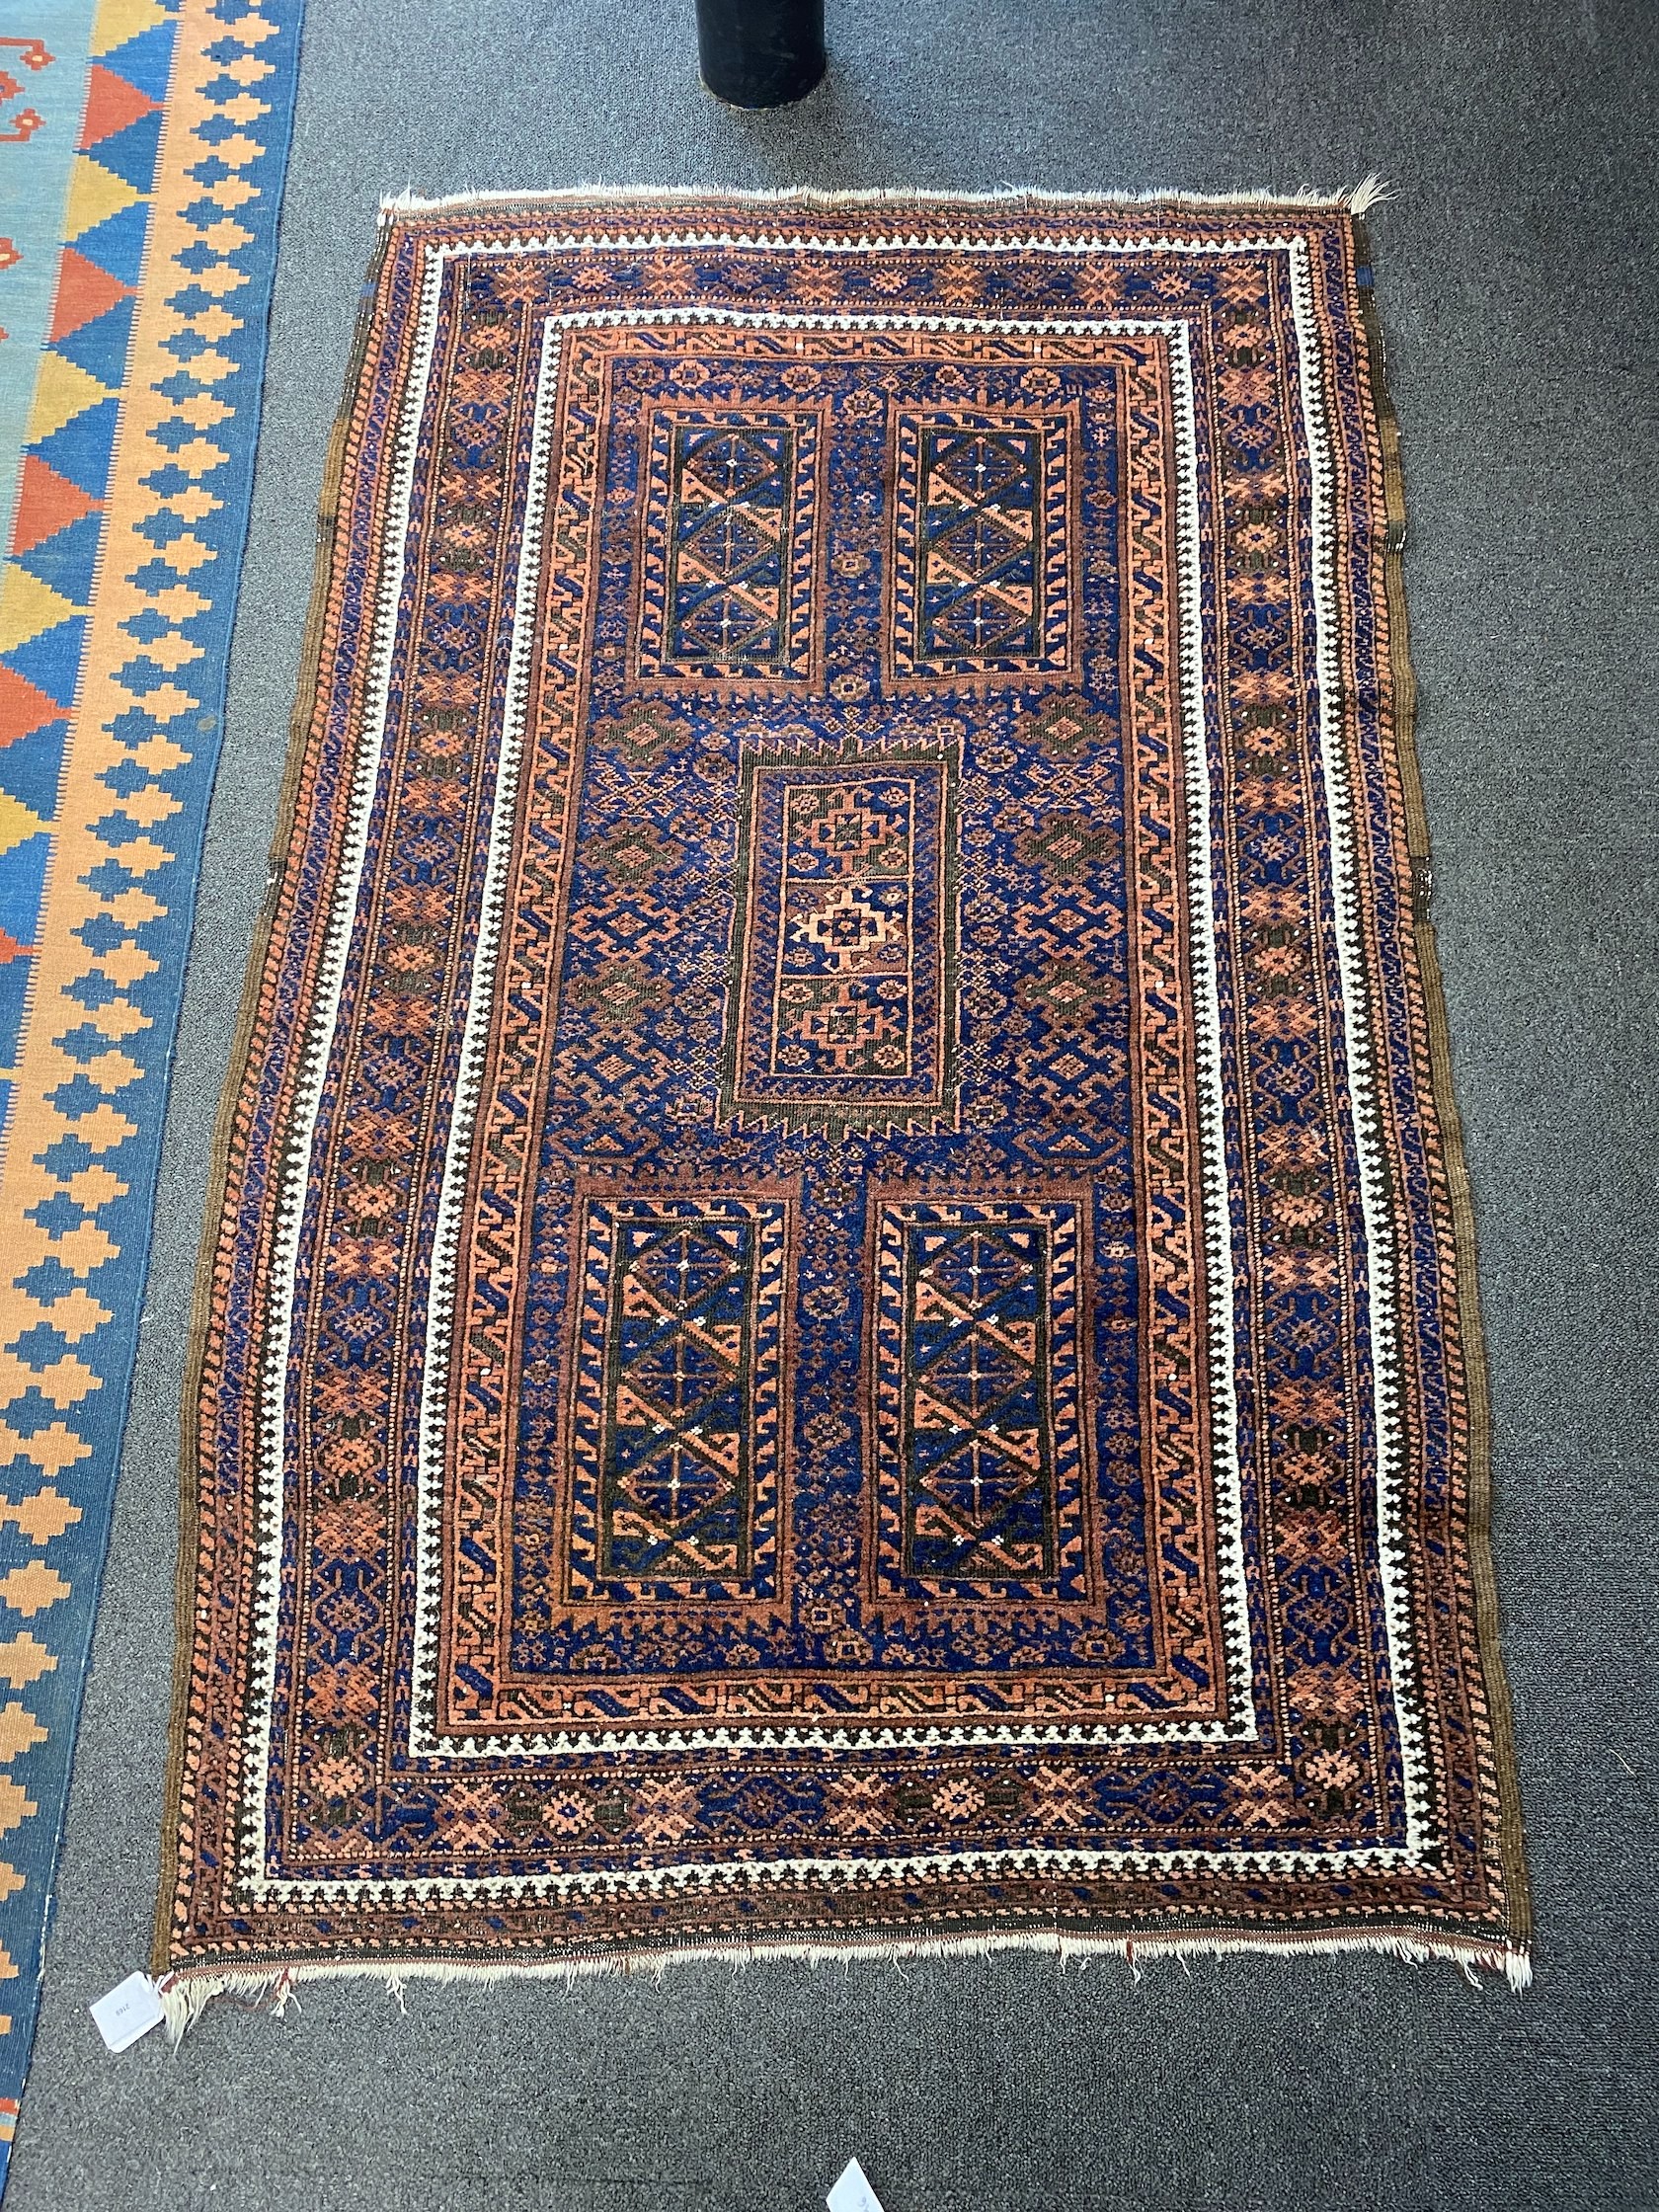 A Belouch blue ground rug, 156 x 102cm